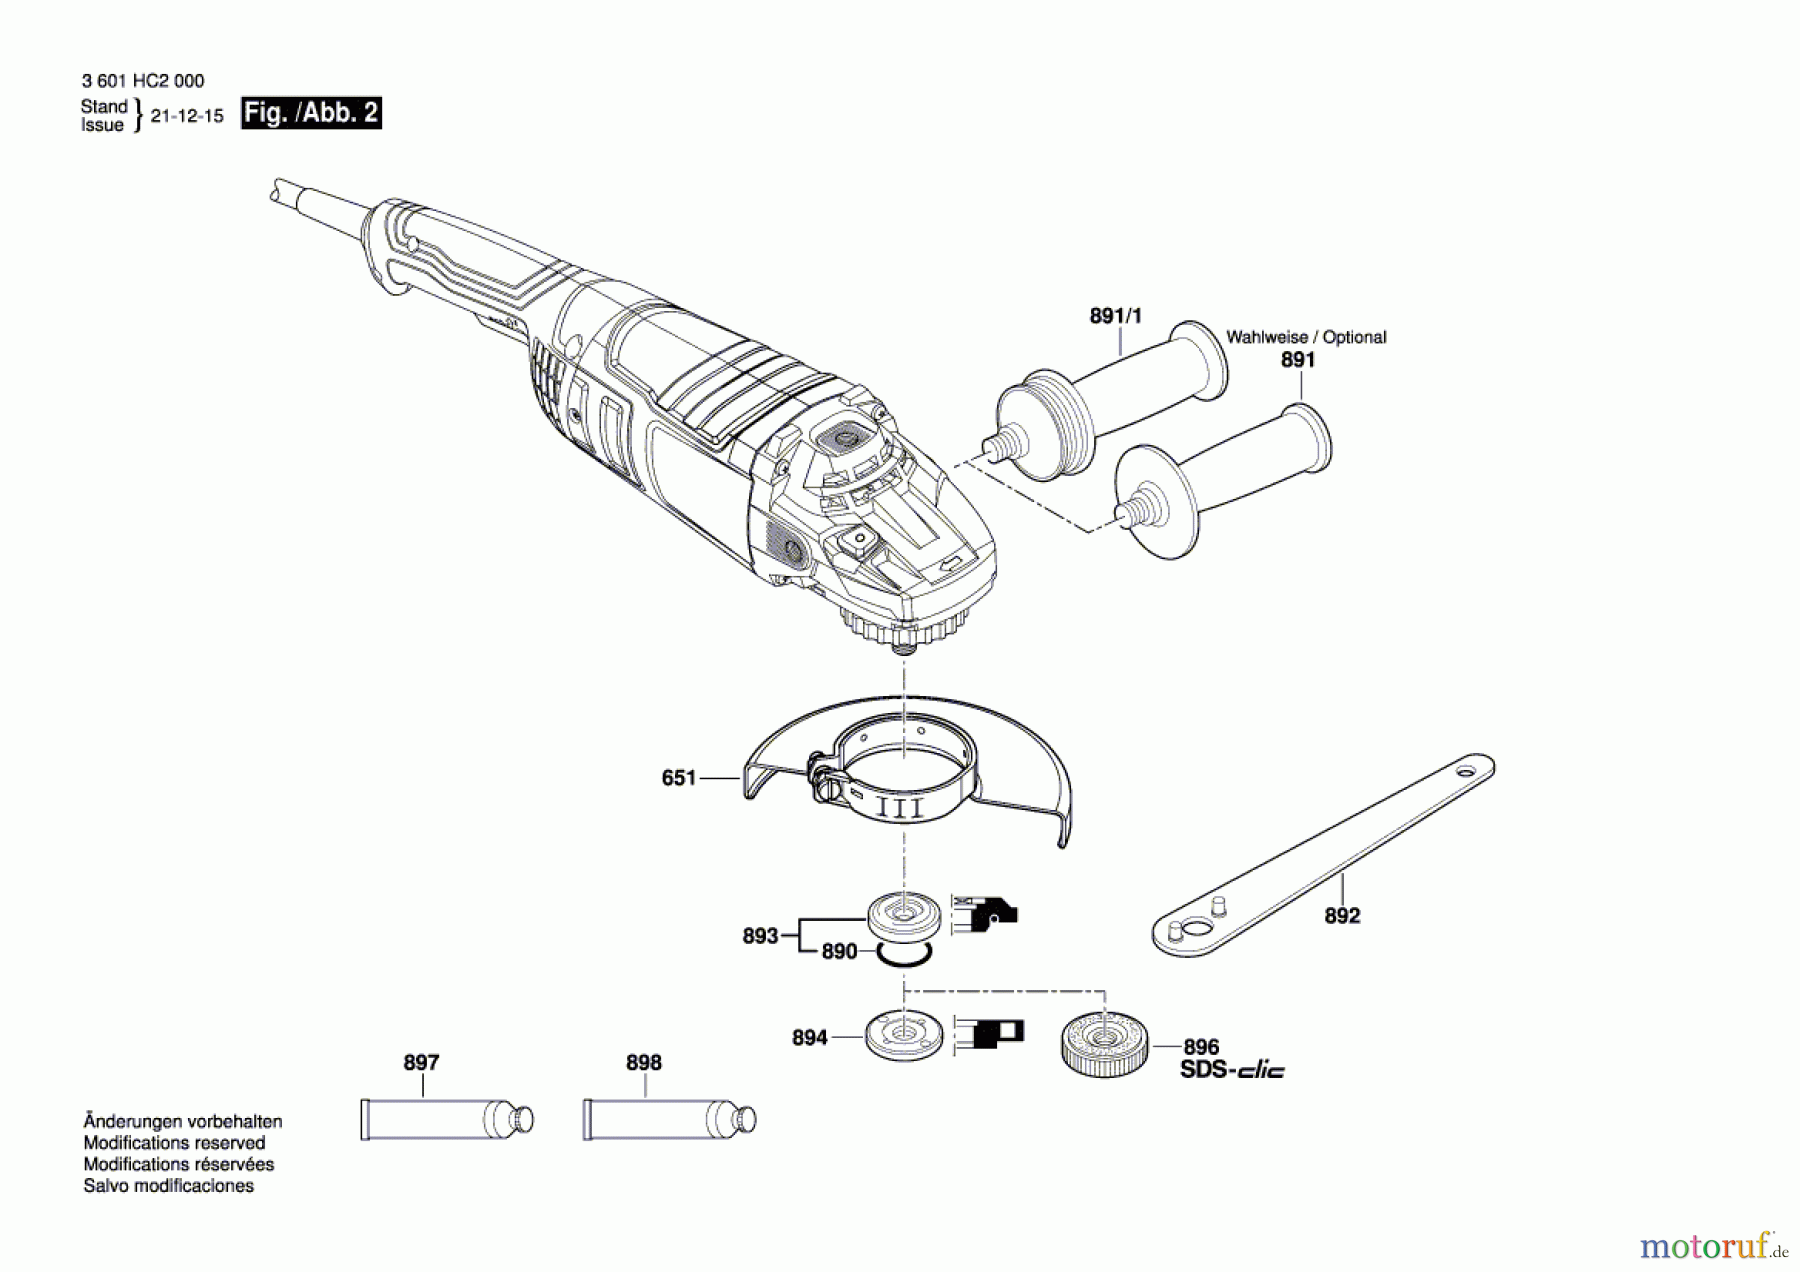  Bosch Werkzeug Winkelschleifer GWS 24-230 Seite 2